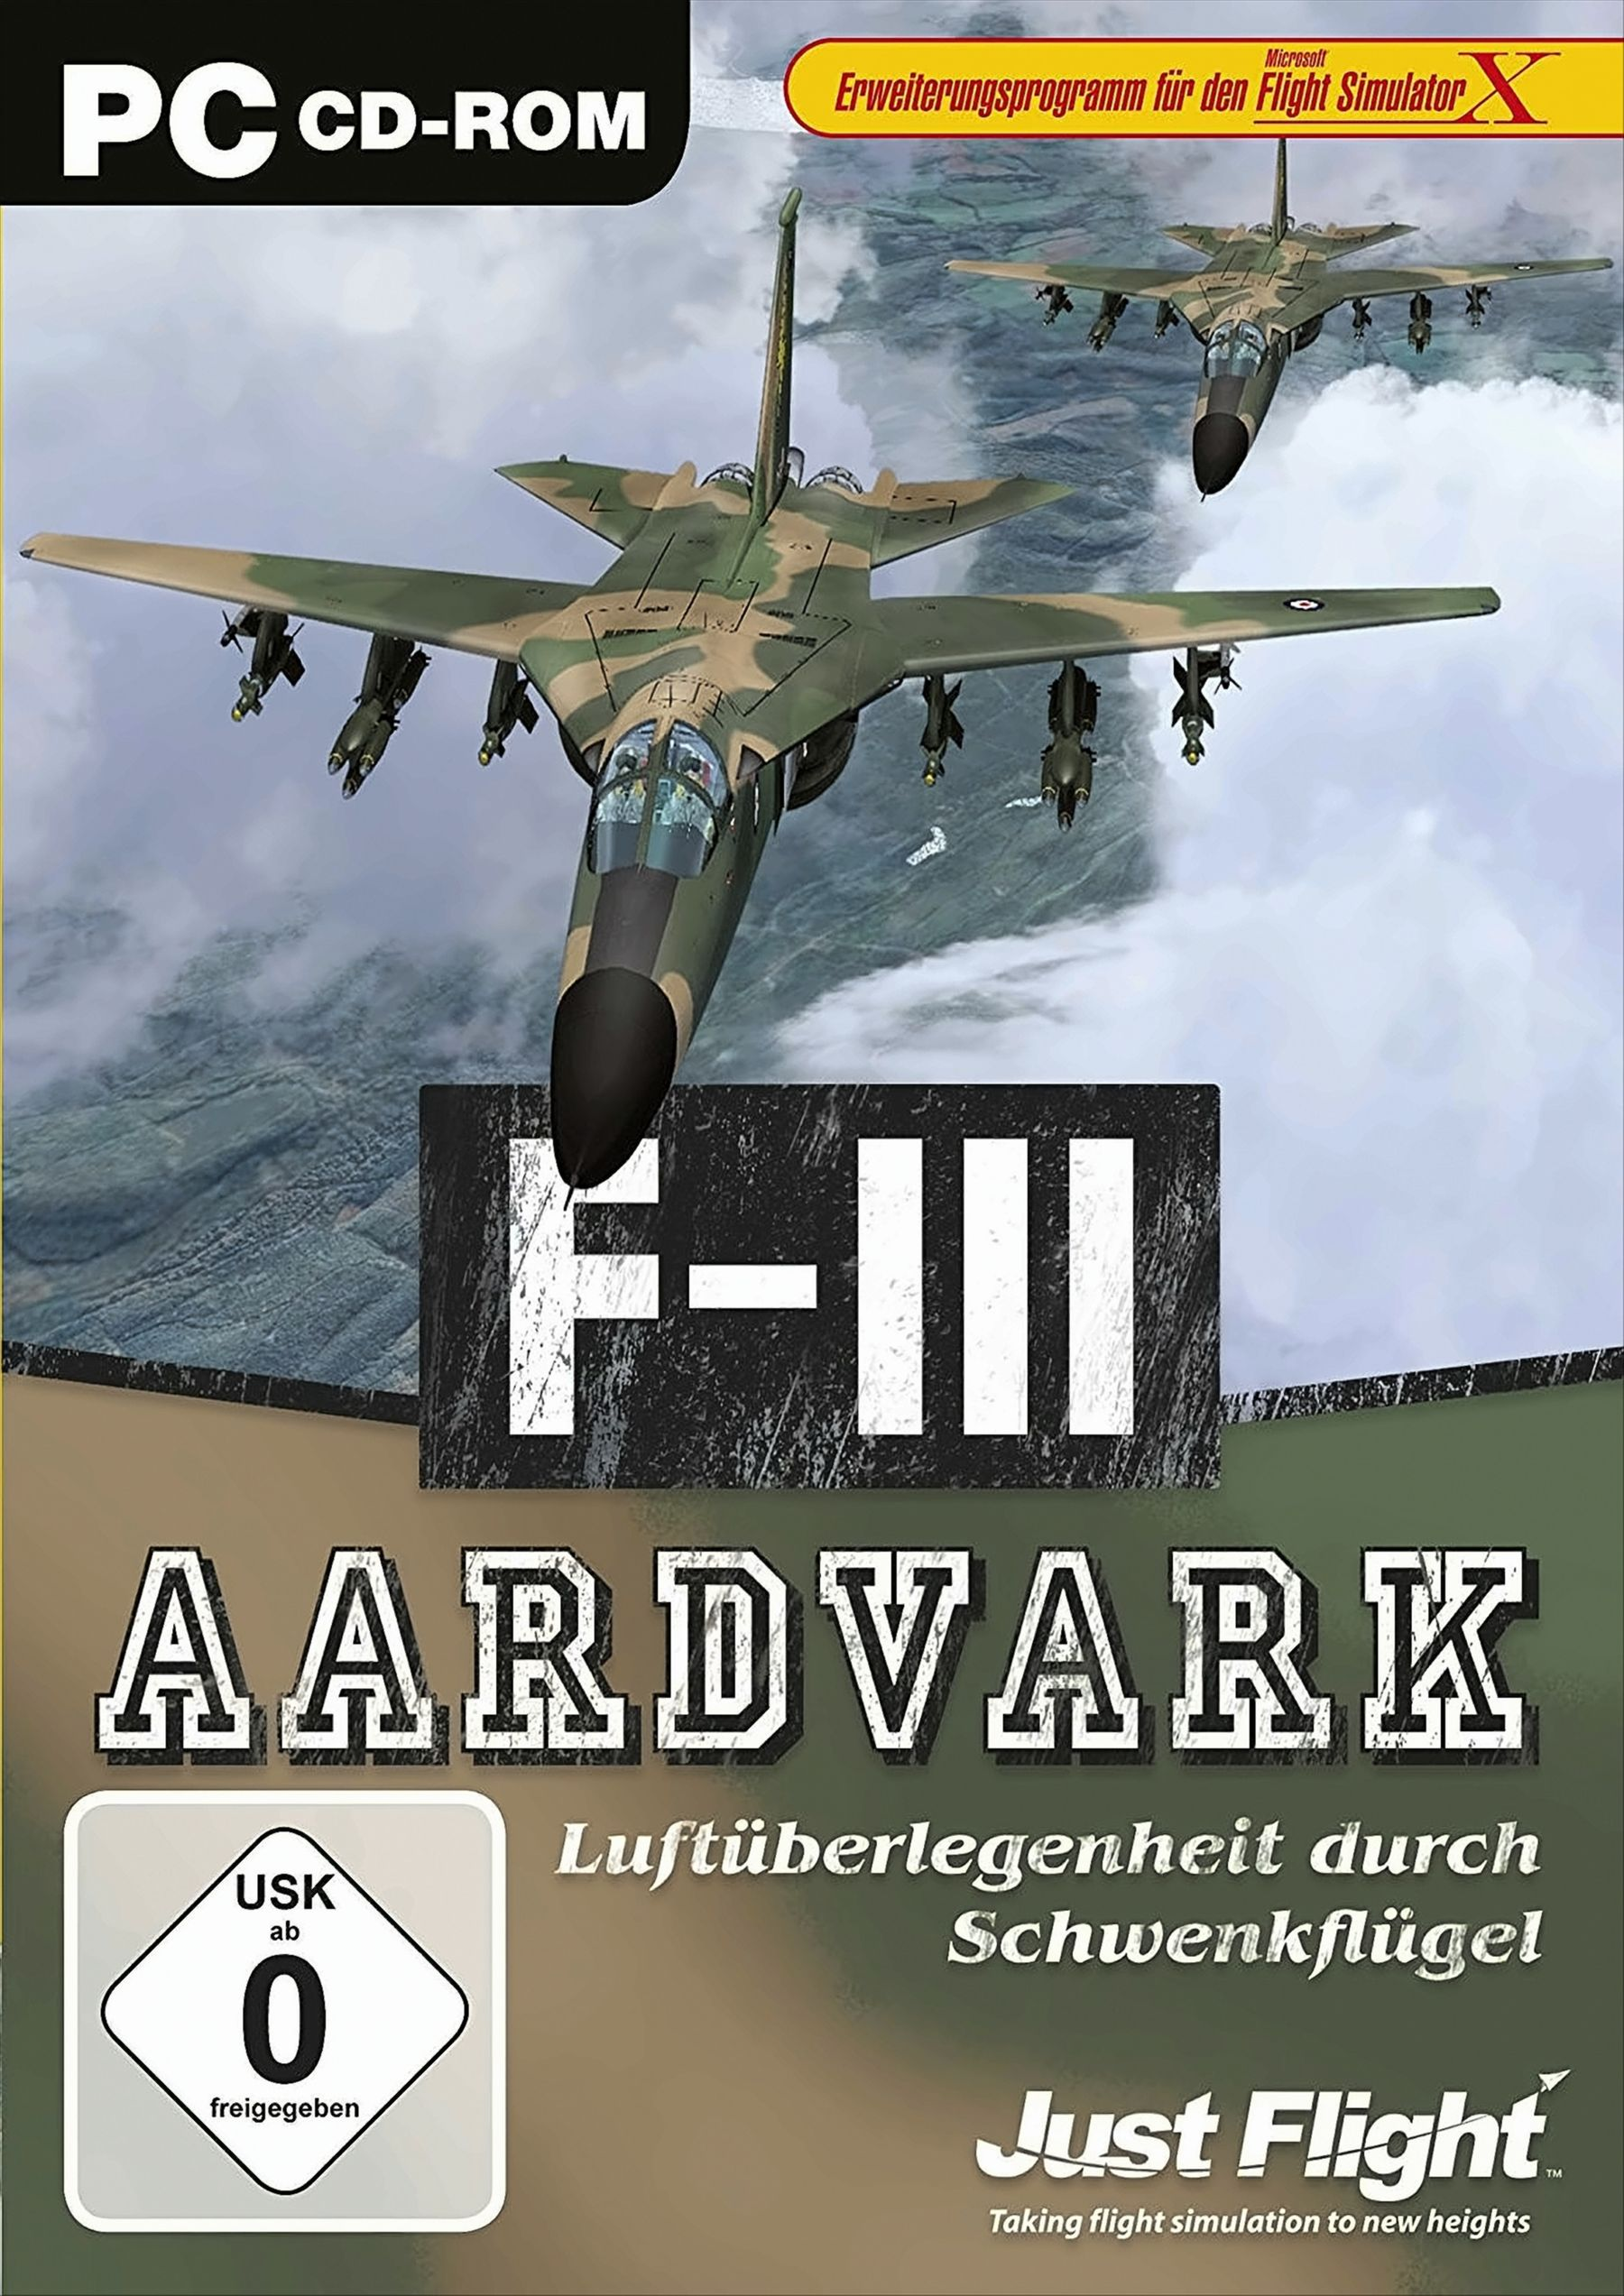 - (FSX) Aardvark F-111 [PC]